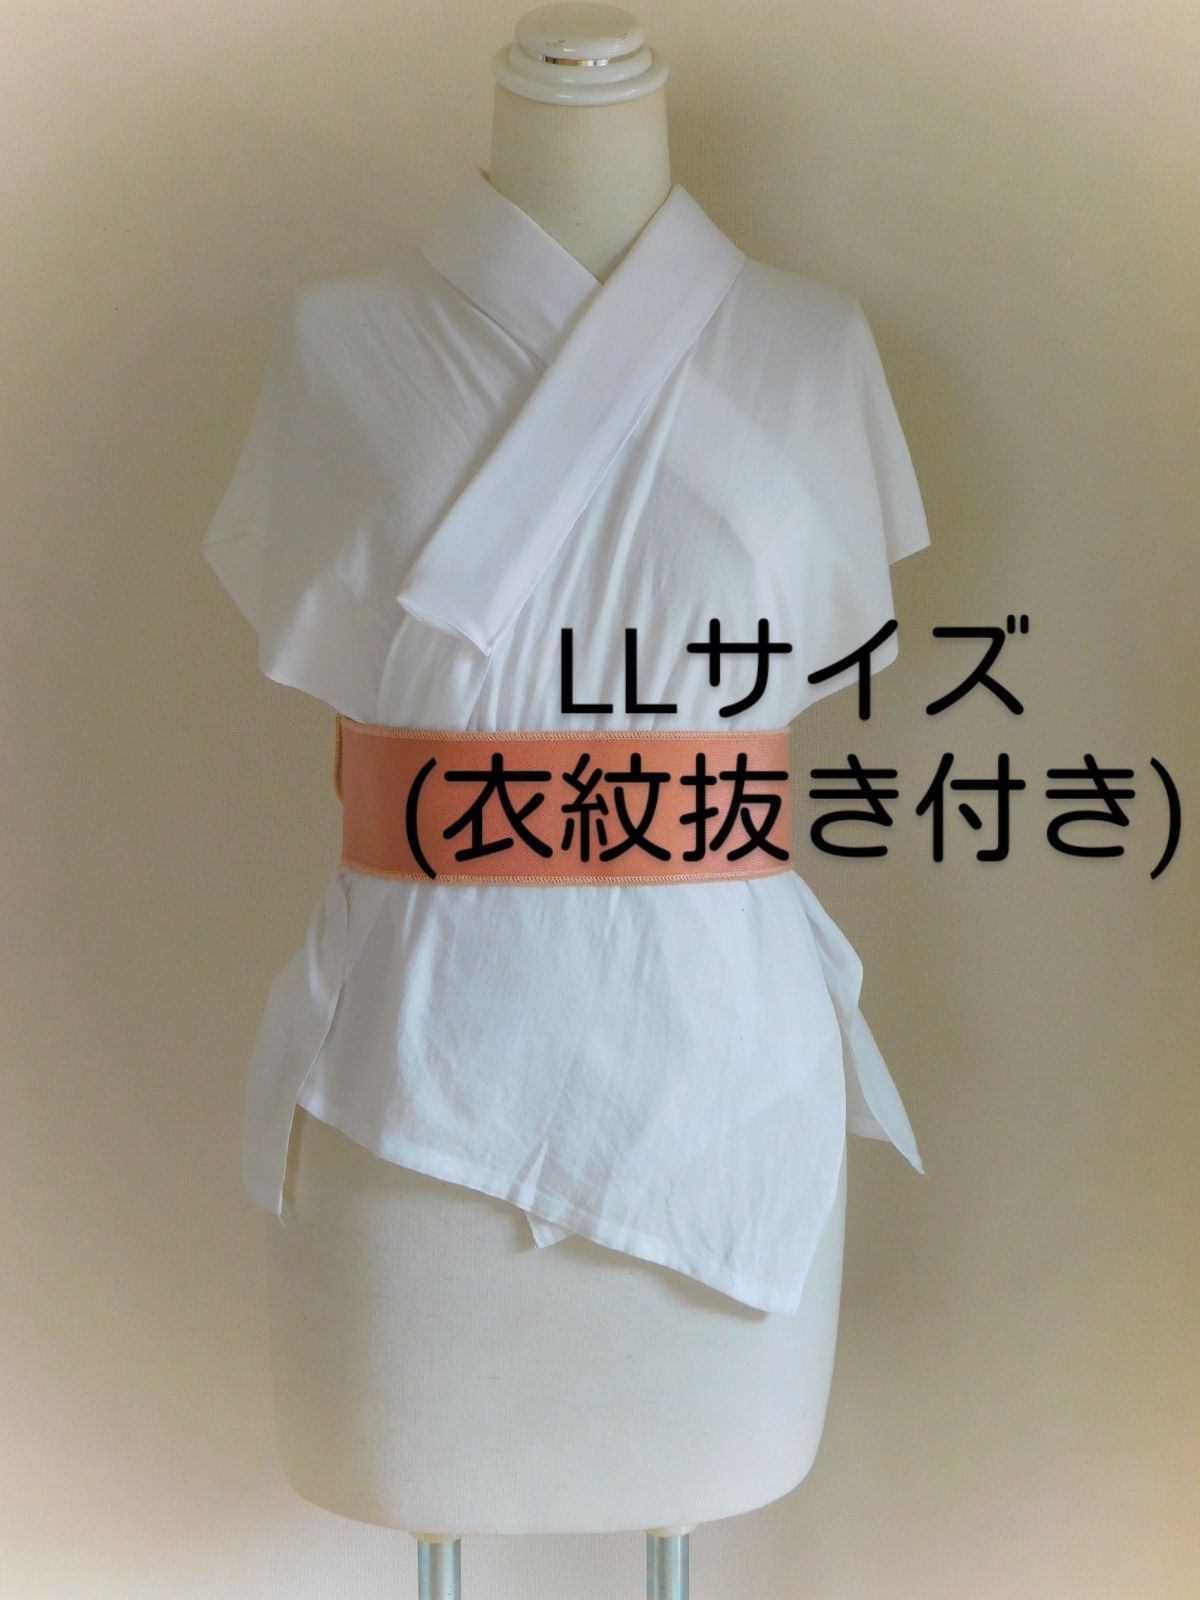 衣紋抜き付きLLサイズ、晒(さらし)で作った手作り半襦袢 - 着物・浴衣